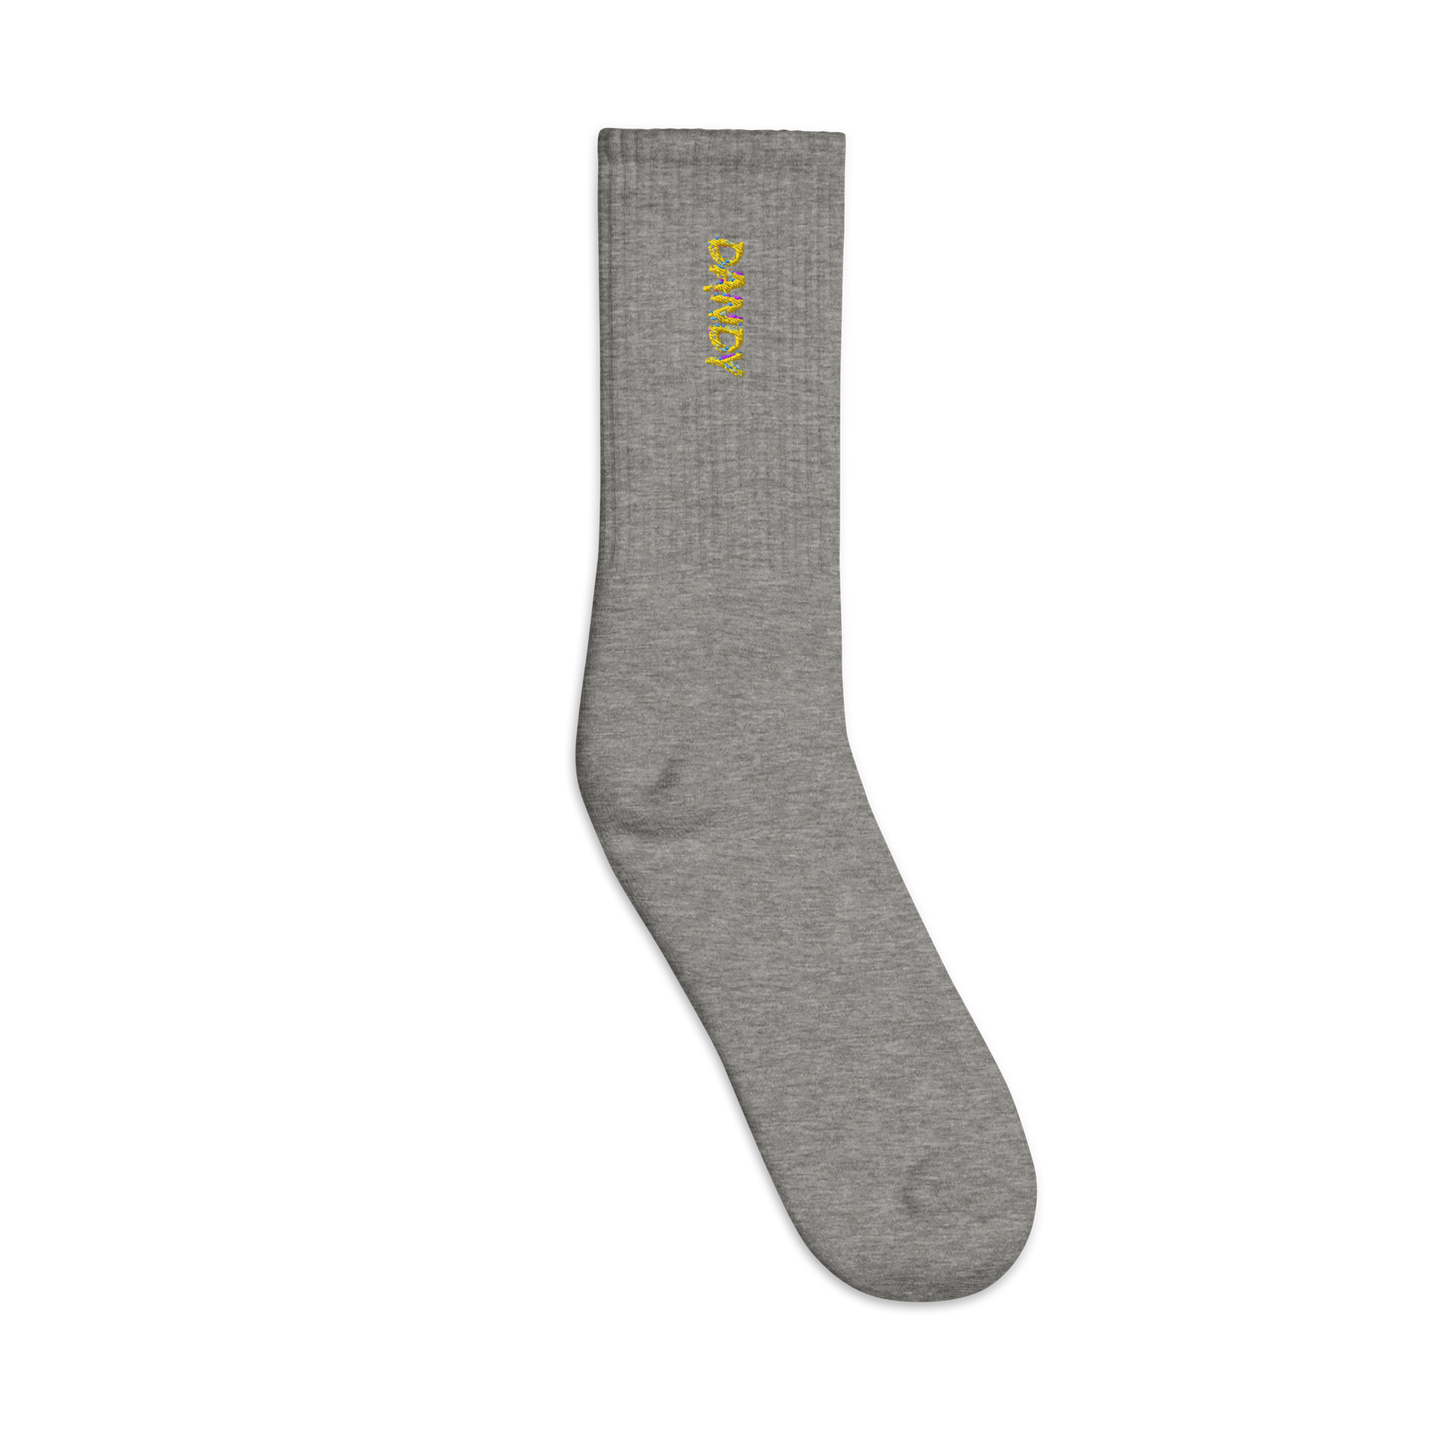 Banana Embroidered socks